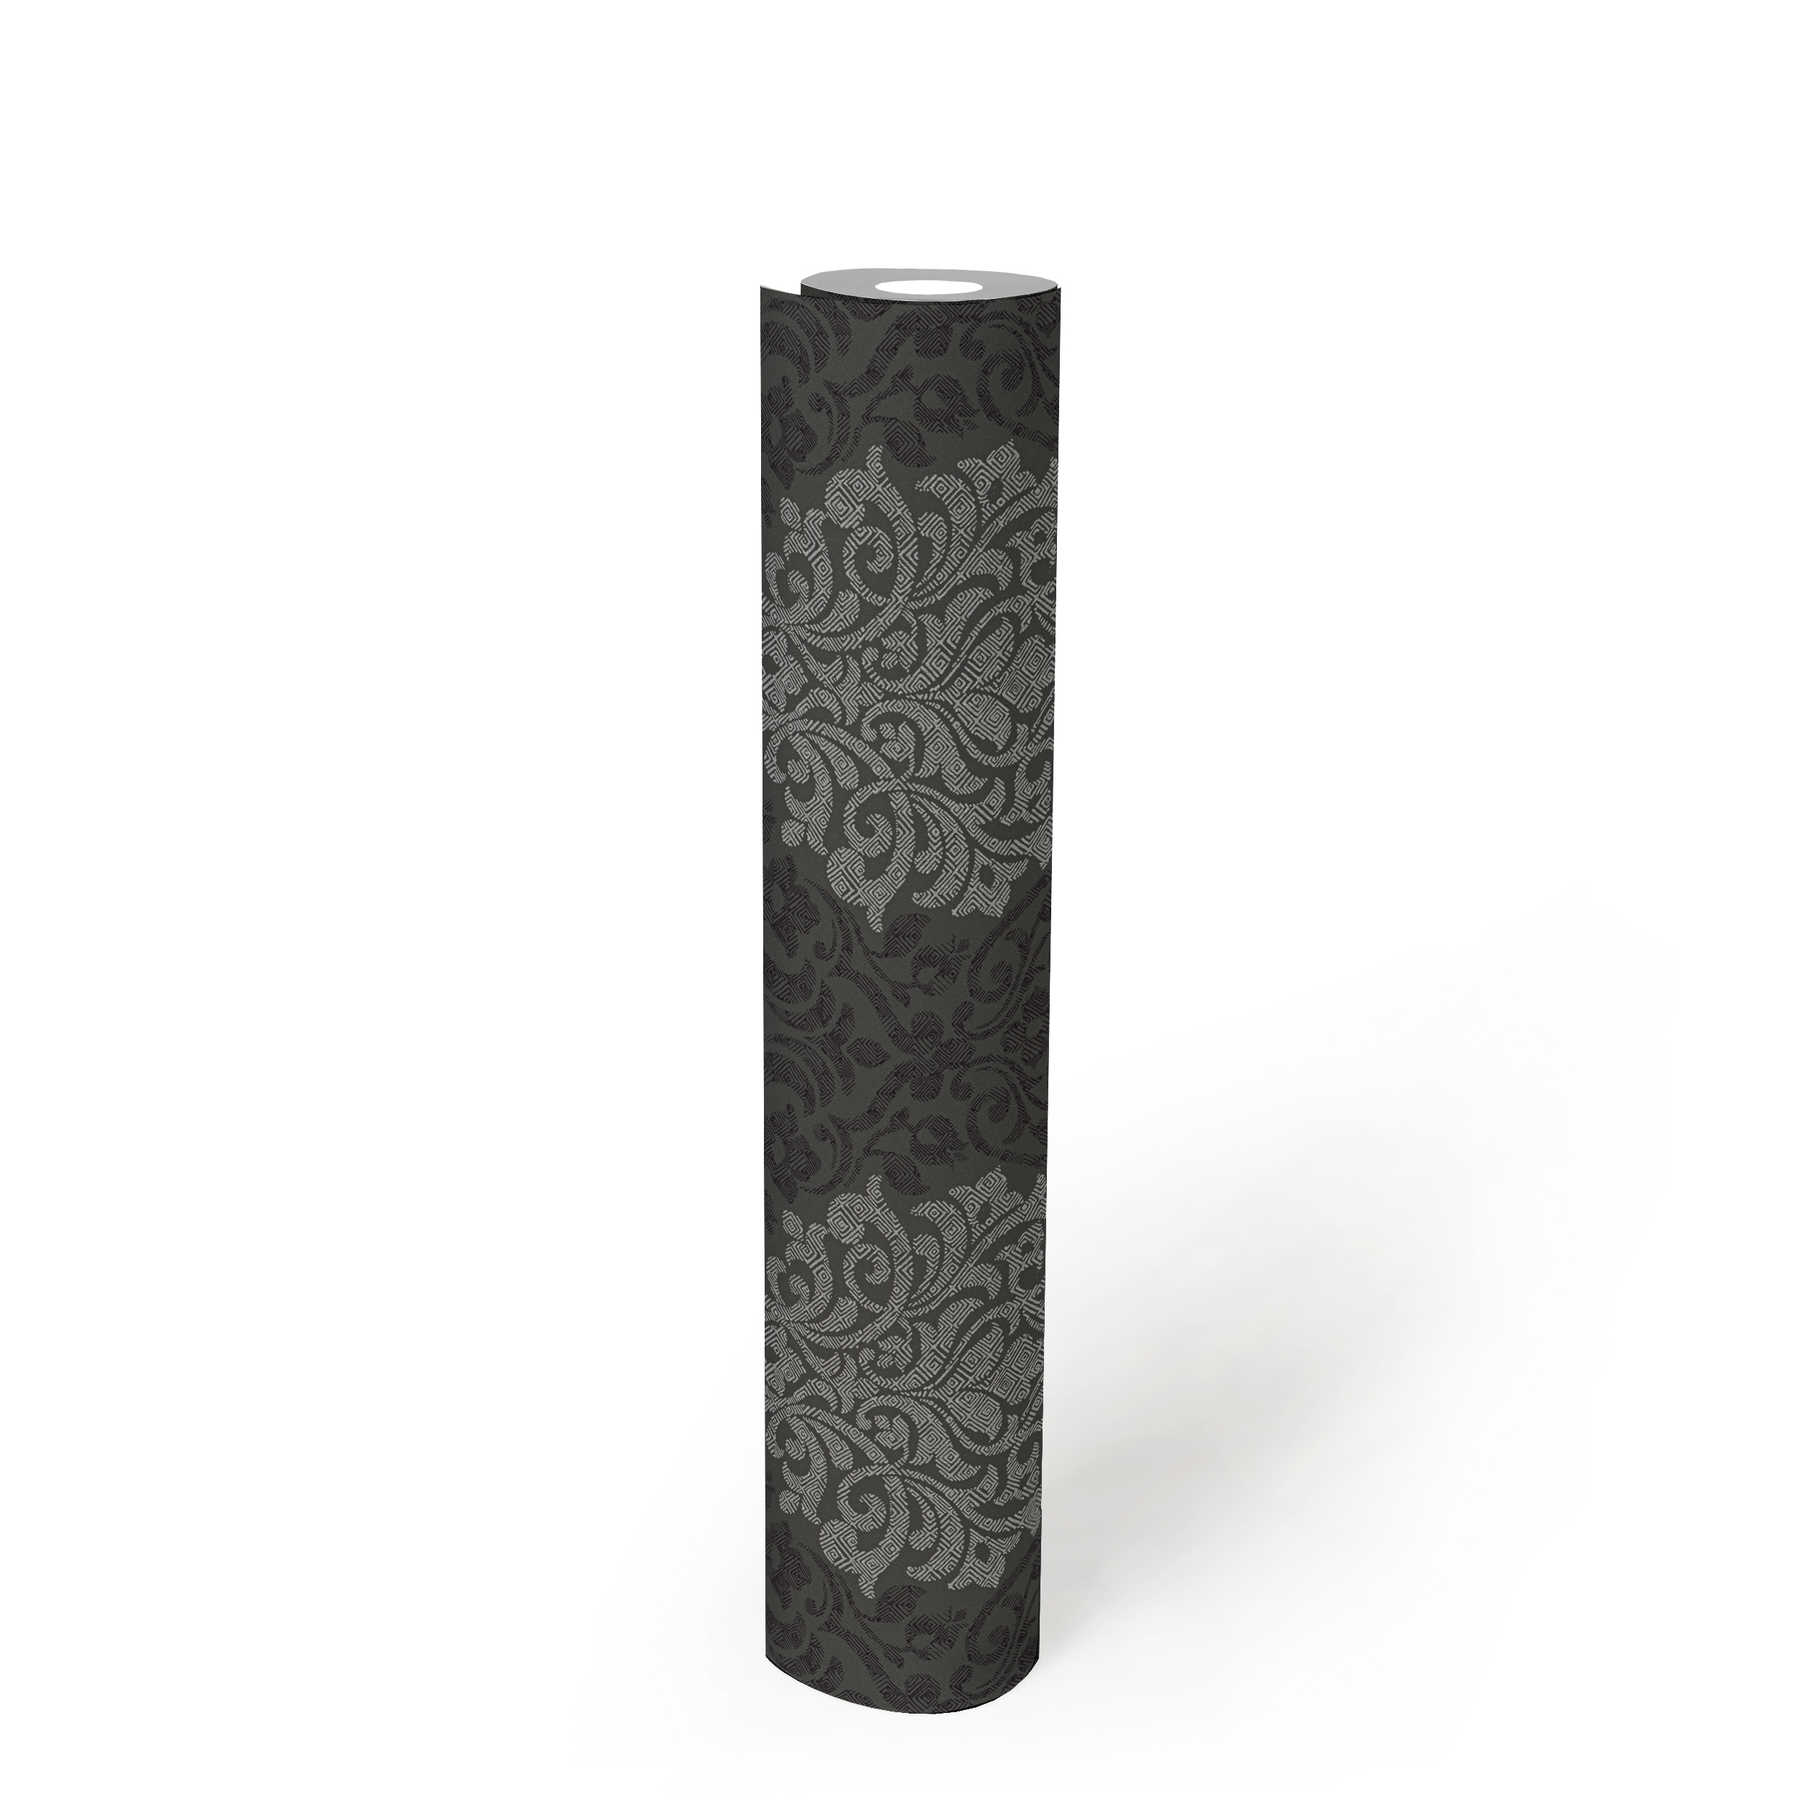             Carta da parati ornamentale floreale con motivo a rombi in stile etno - argento, nero, grigio
        